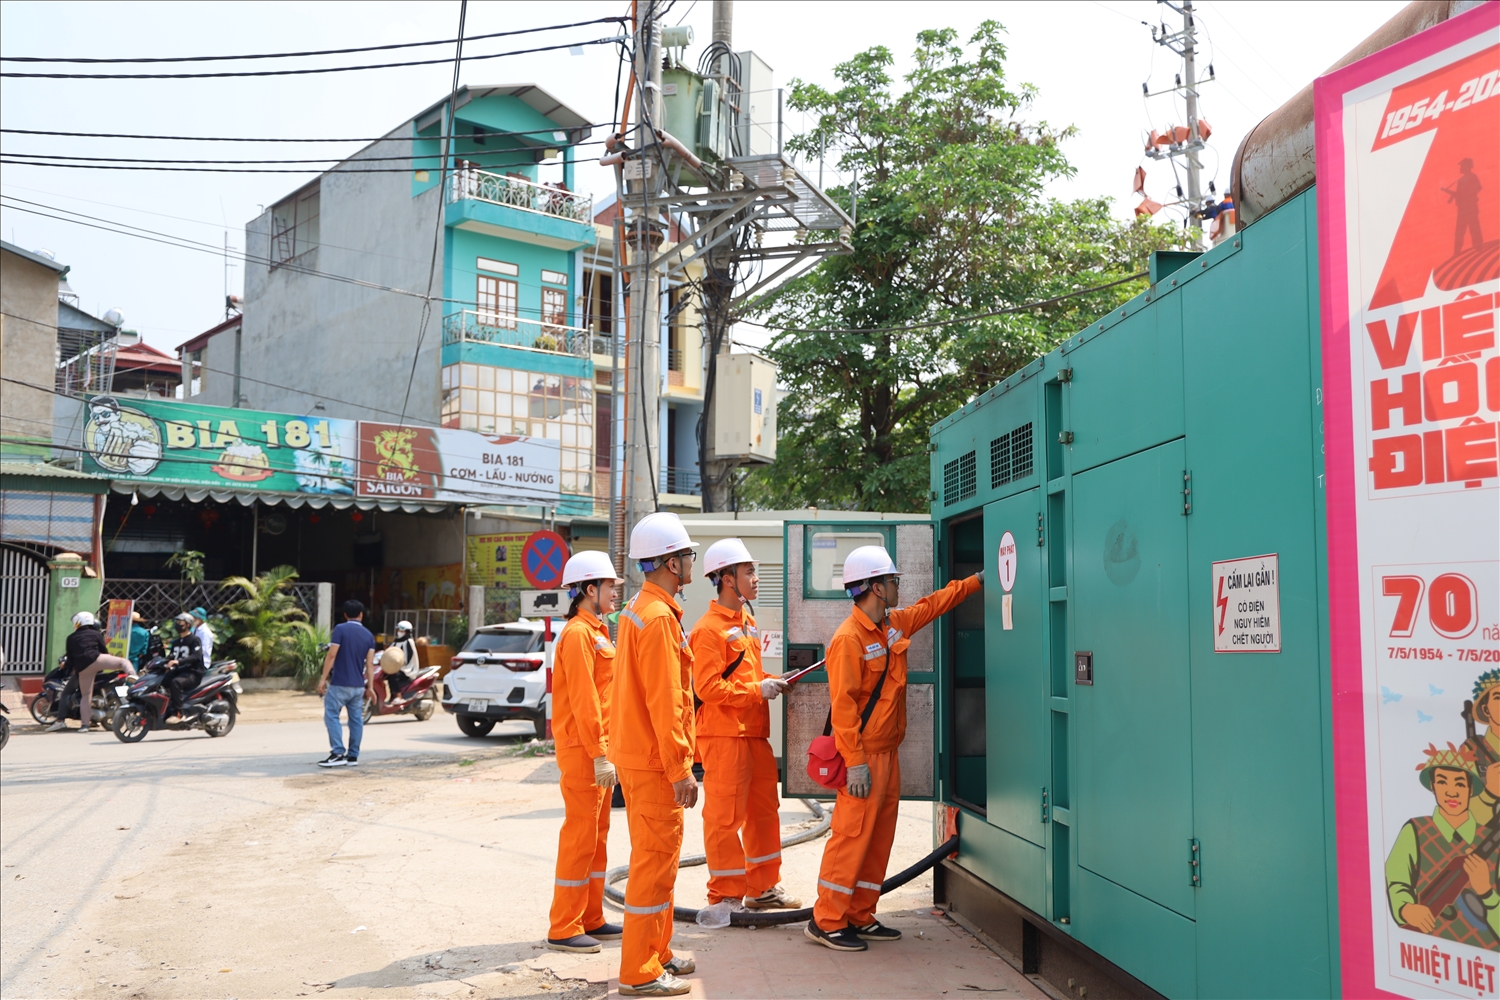  Điện lực thành phố Điện Biên Phủ đã bố trí nhân lực, phương tiện, trang thiết bị phục vụ điện tại những khu vực diễn ra các sự kiện